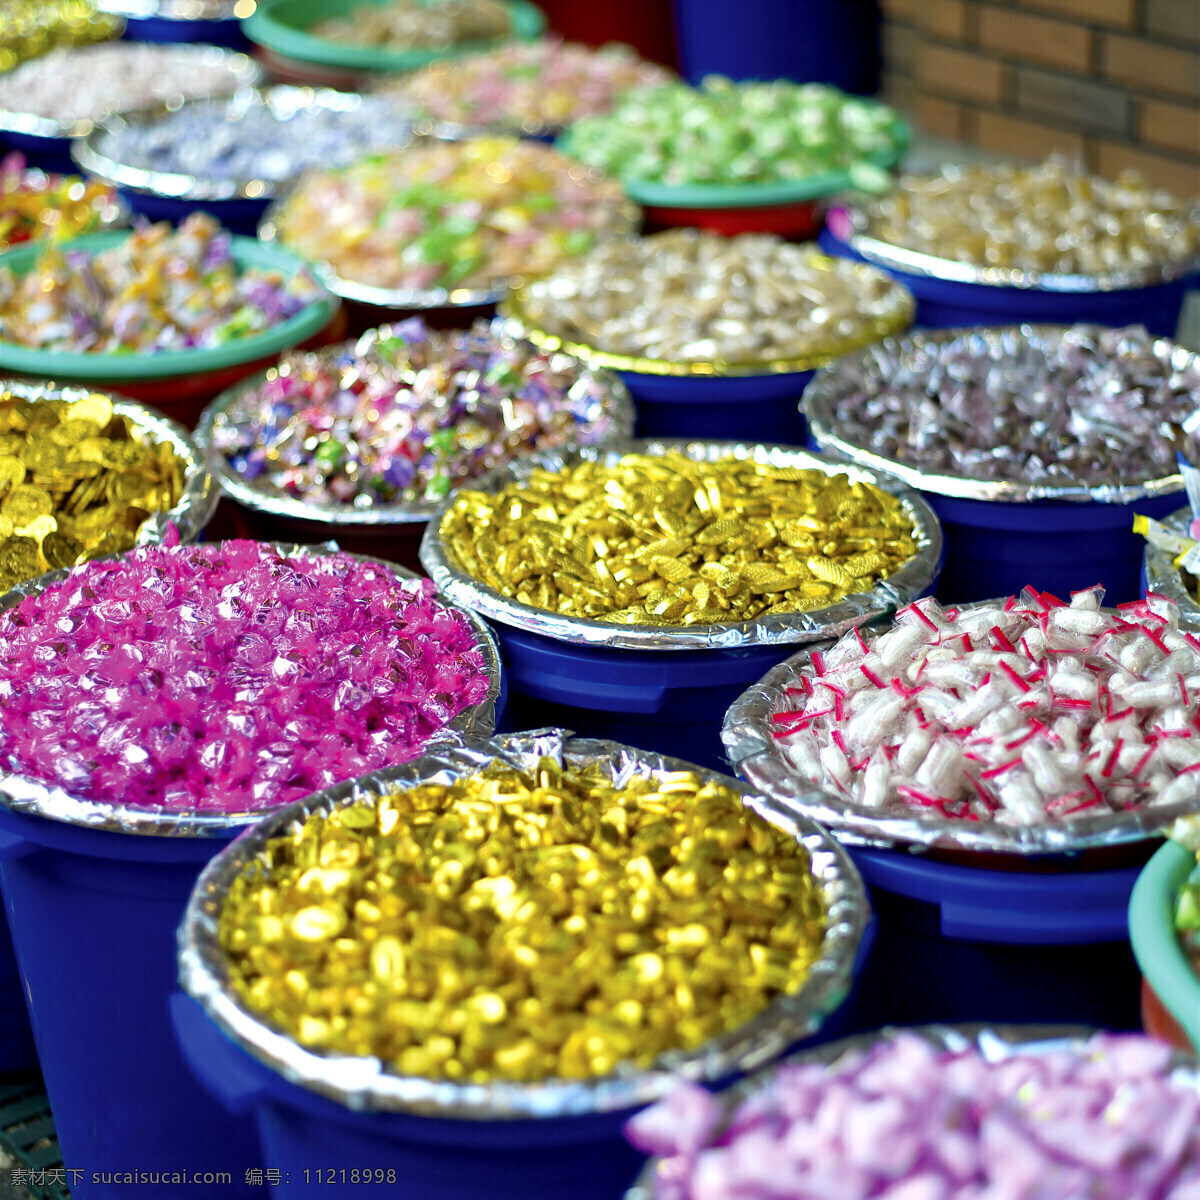 传统 传统文化 摄影素材 摄影图库 食品 文化艺术 新年 中国风 五彩 糖果 五彩糖果 中国元素